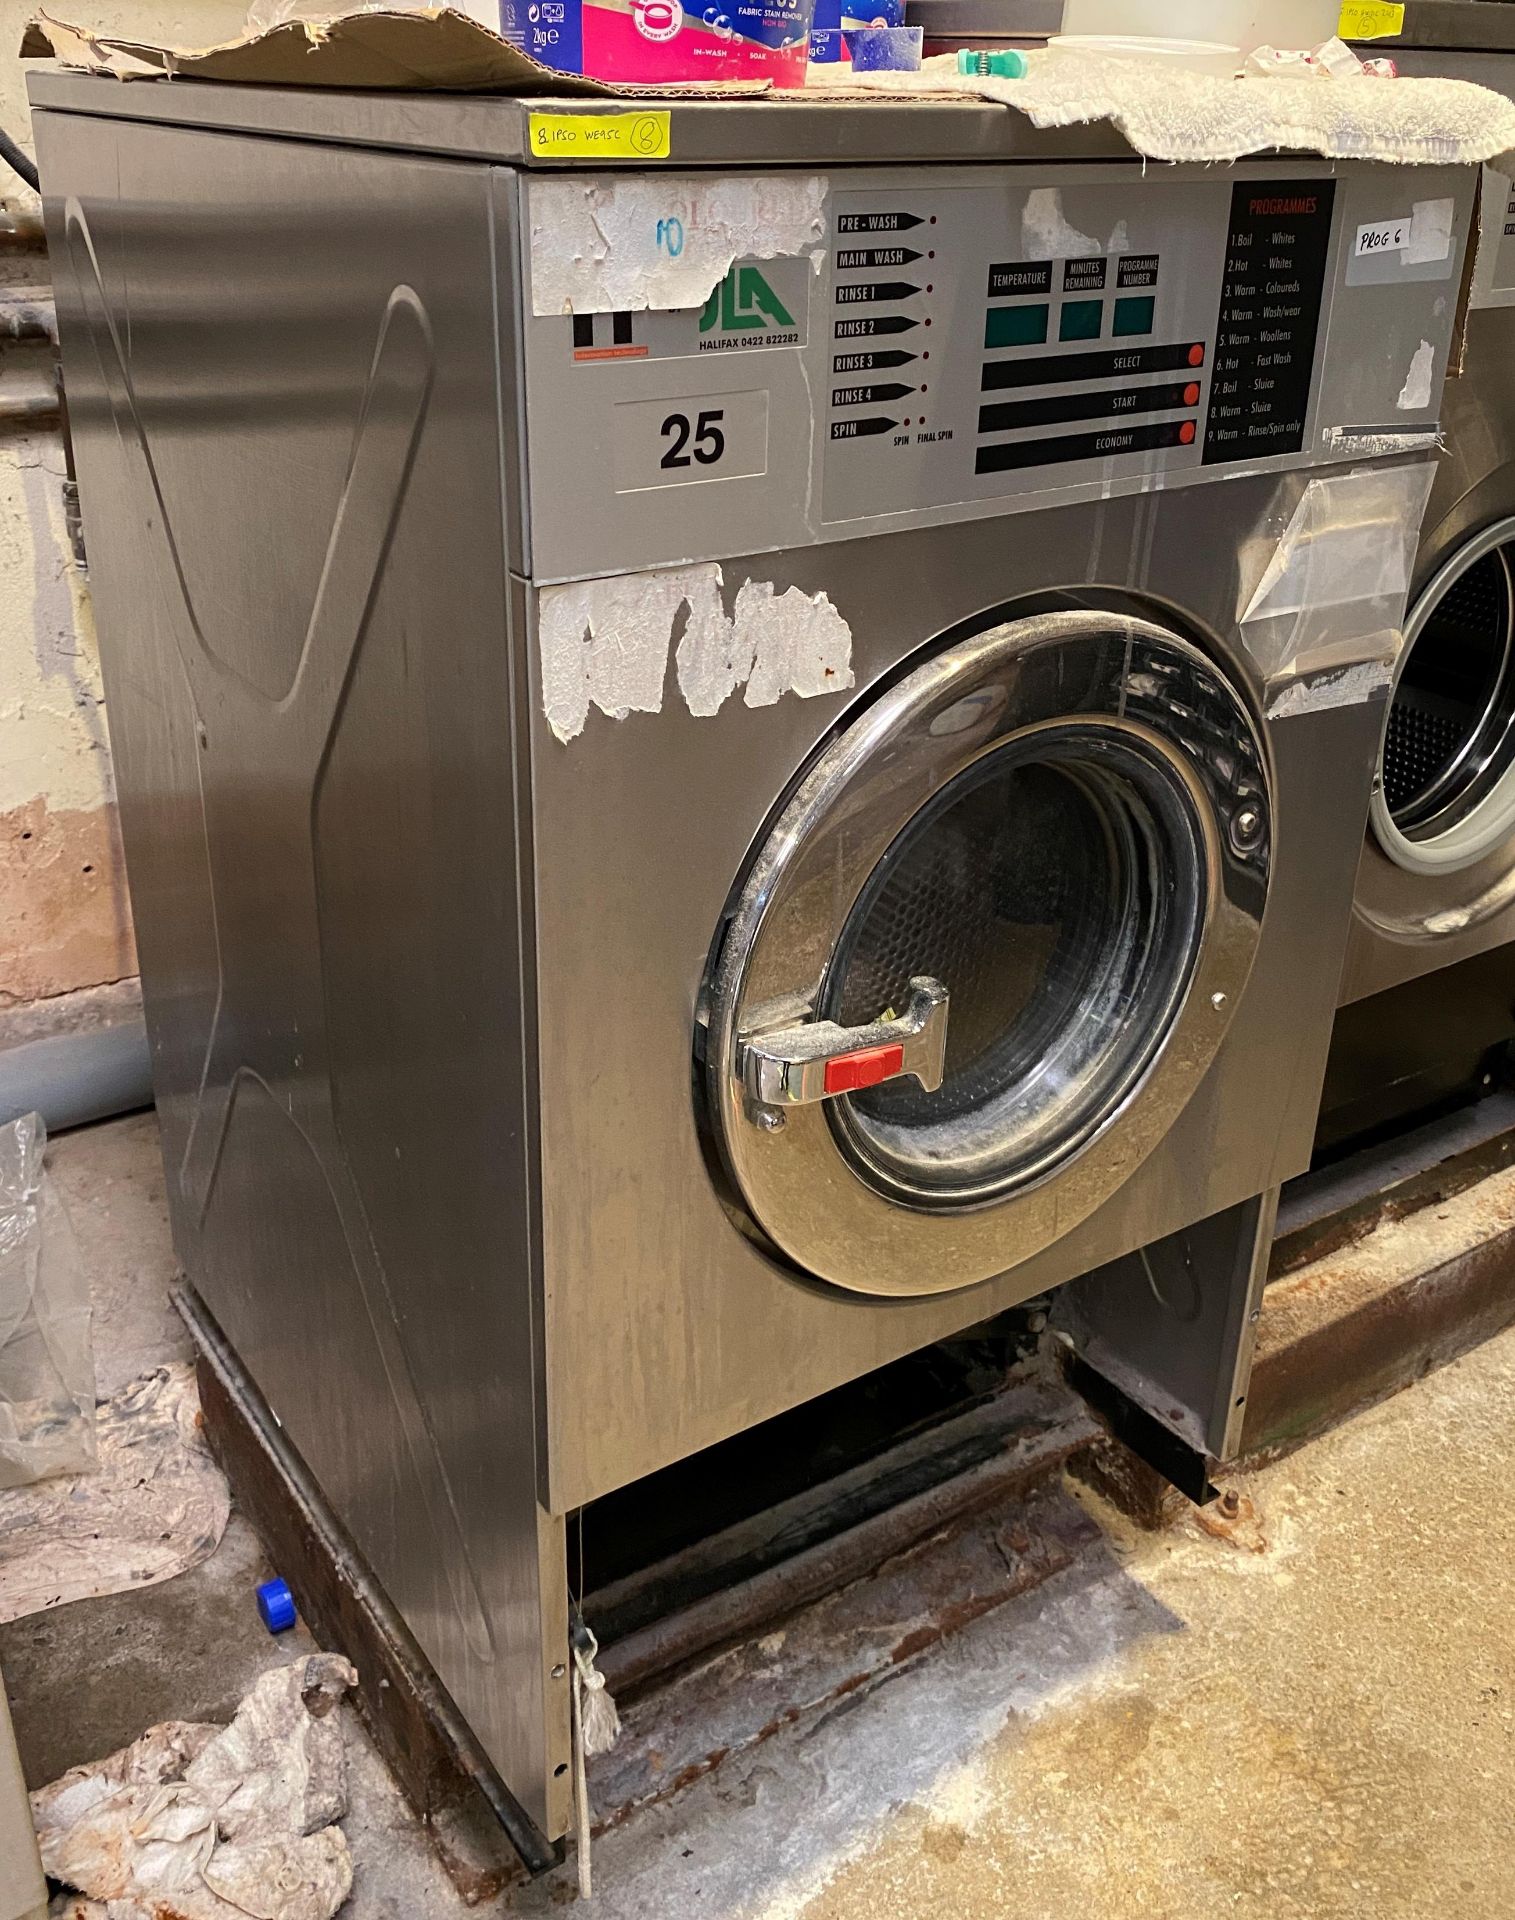 IPSO WE95C Commercial Washing Machine DOM 1996 - 3 phase - Image 2 of 4